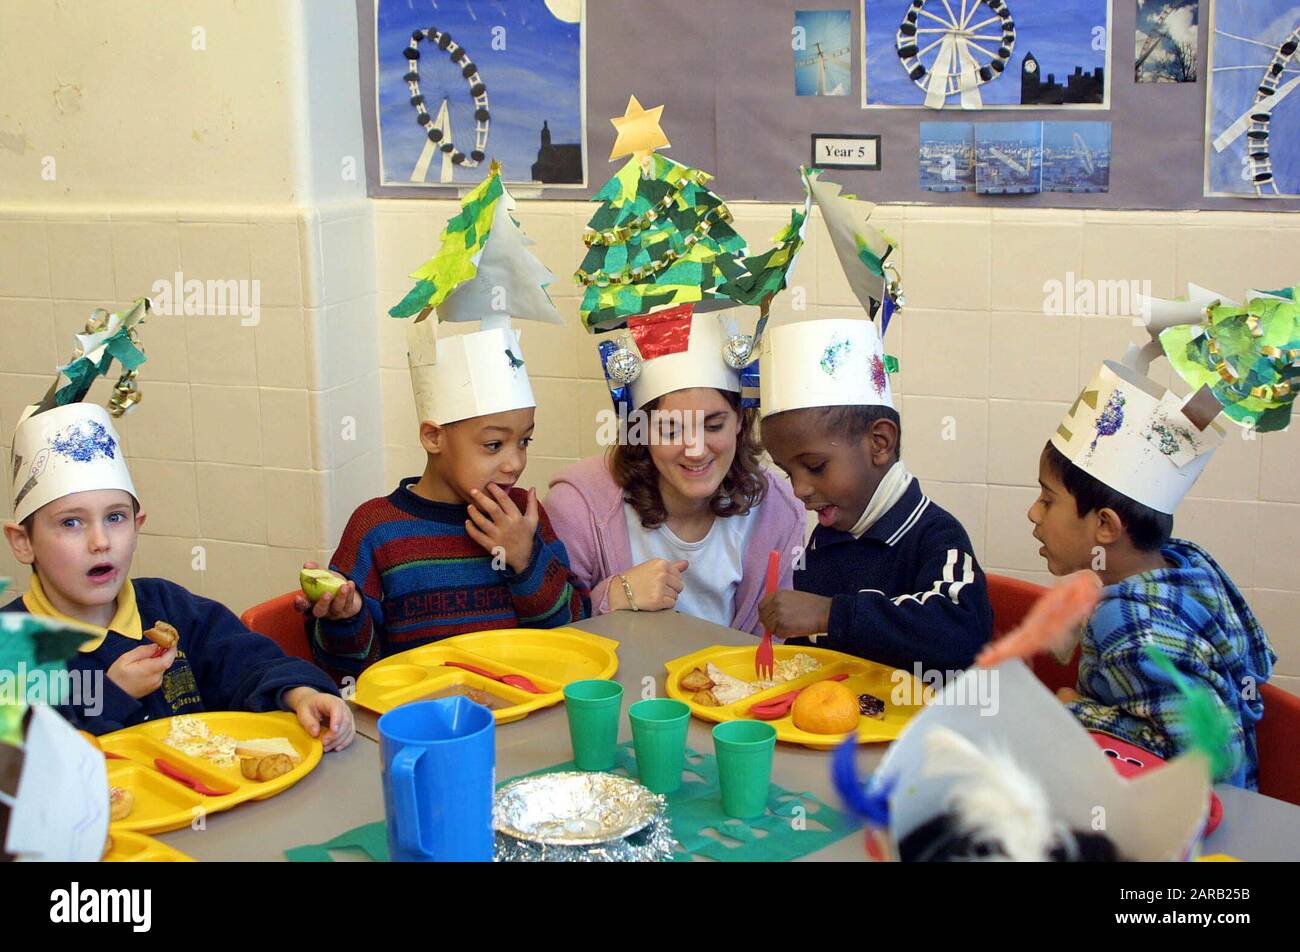 Scuola del villaggio Natale celebrazione in aula con i bambini della scuola primaria e insegnante che ha un pasto che indossa cappelli decorati Foto Stock